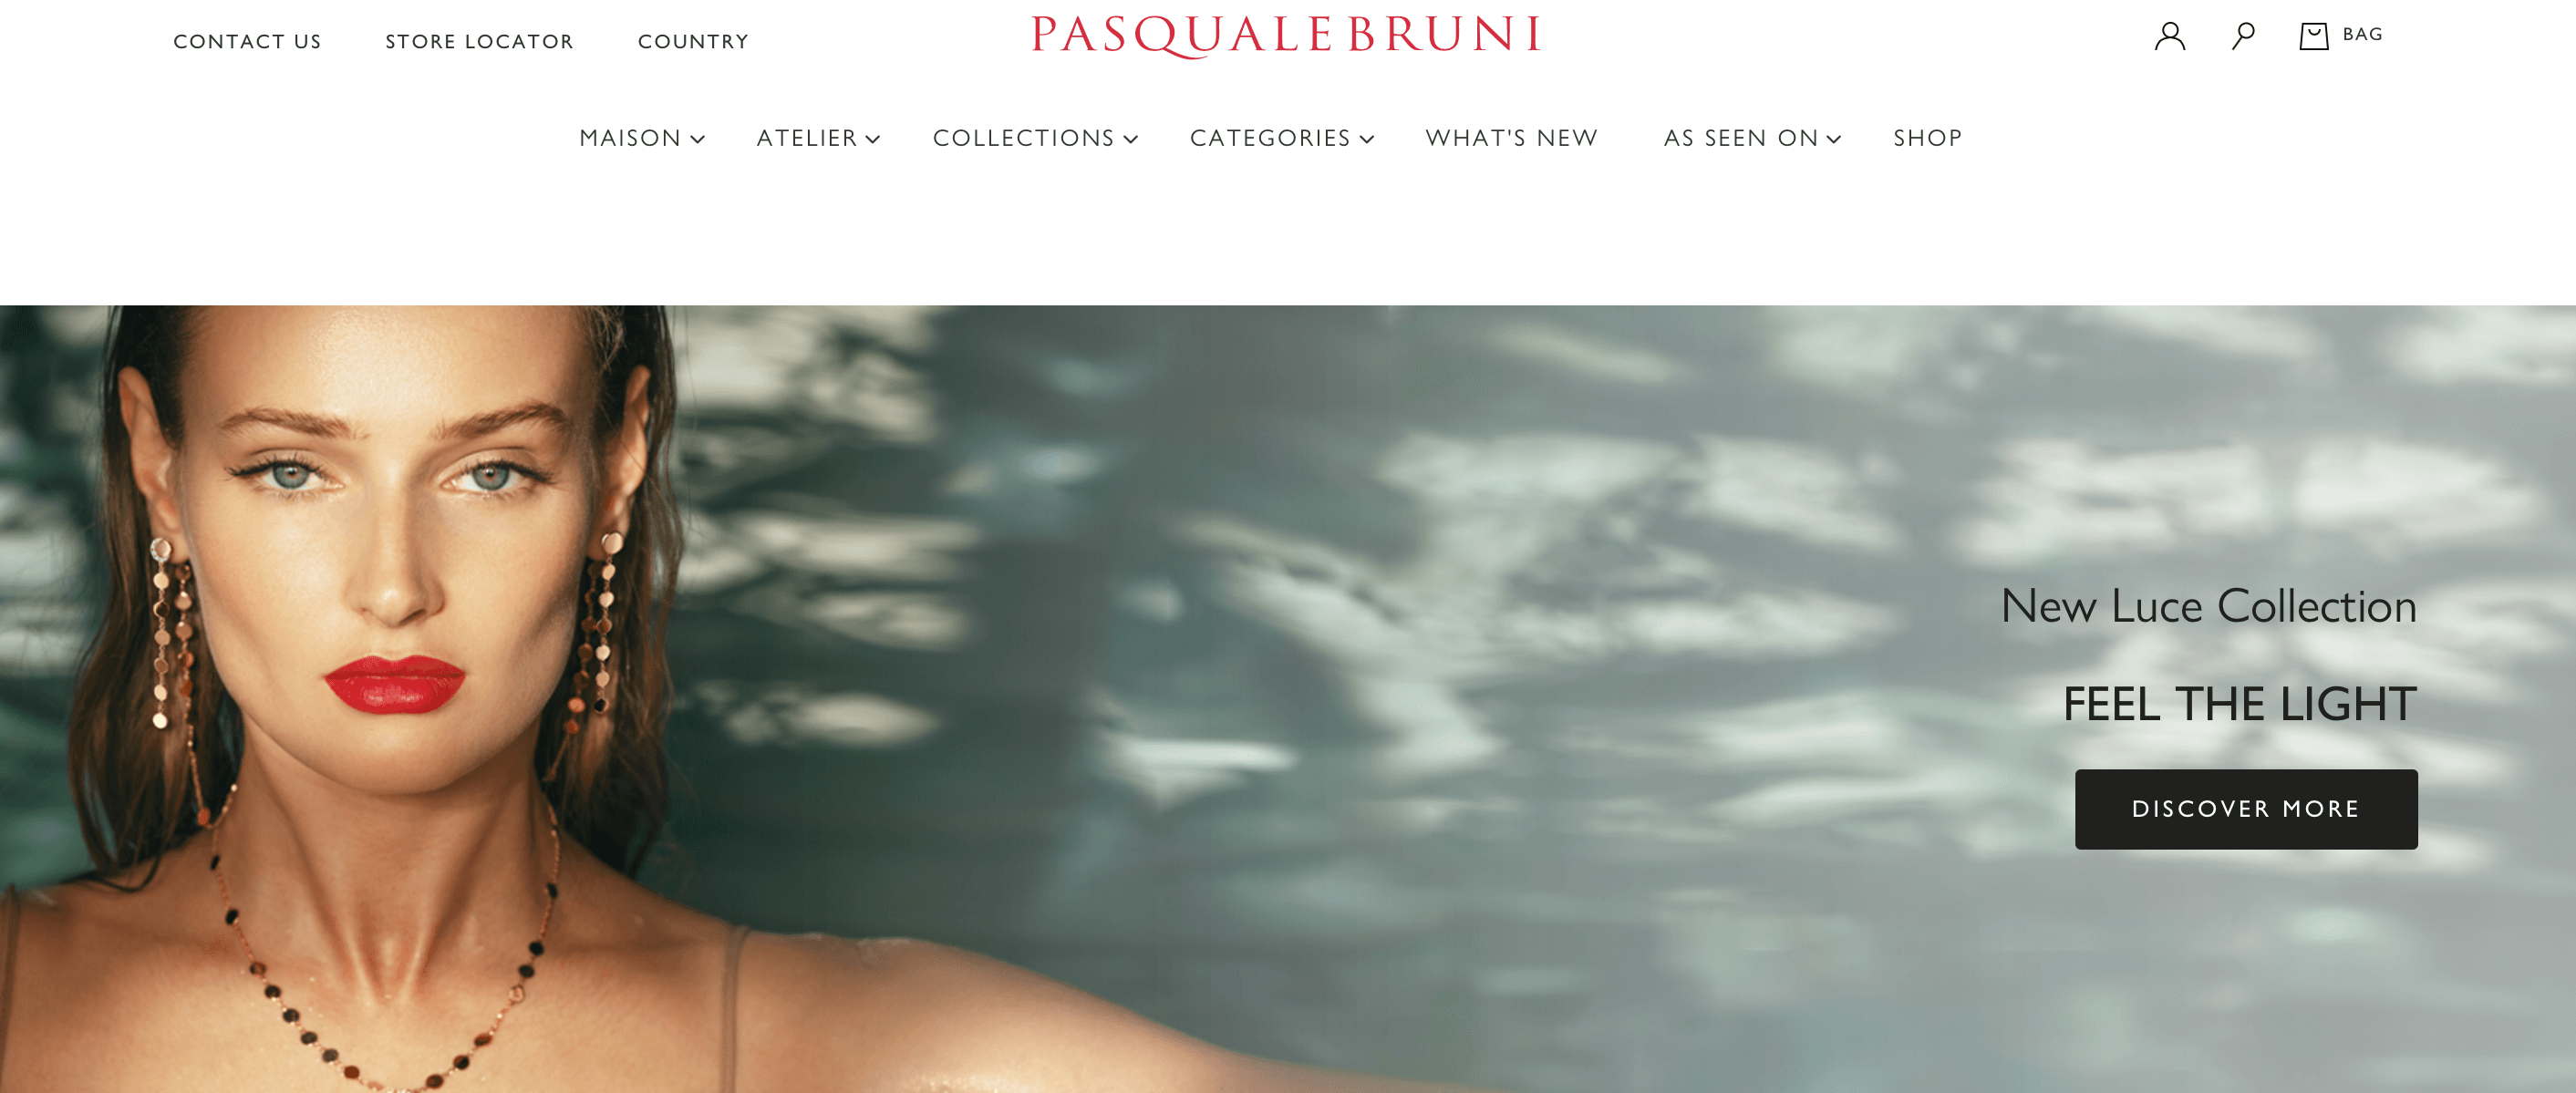 意大利高端珠宝品牌 Pasquale Bruni 与美国时尚奢侈品电商Moda operandi 达成合作